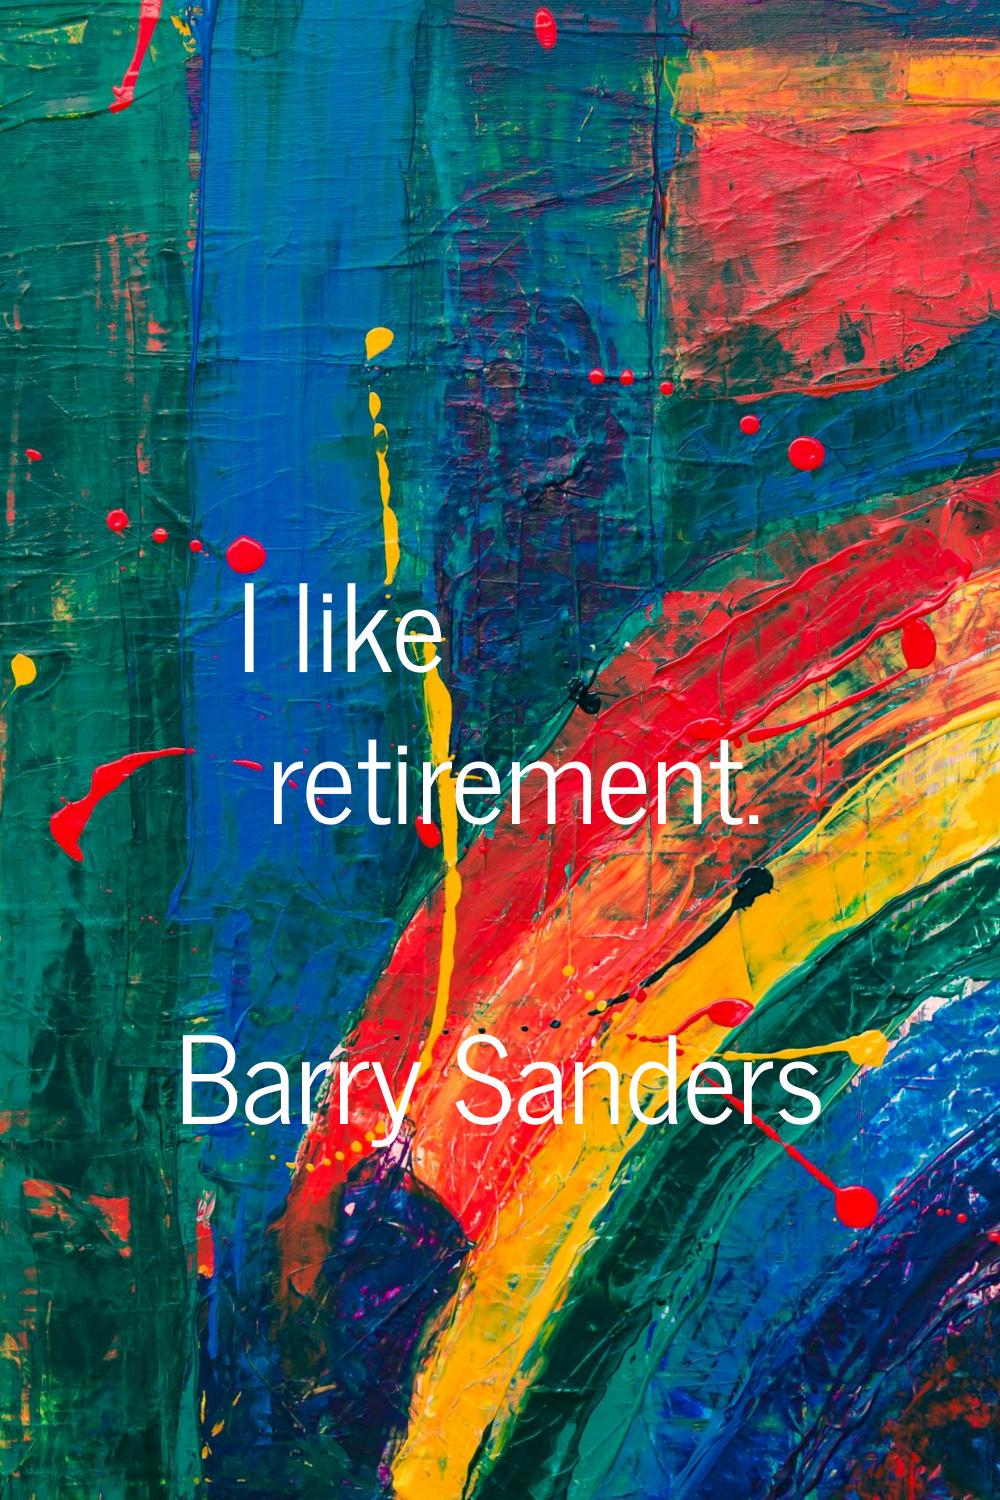 I like retirement.